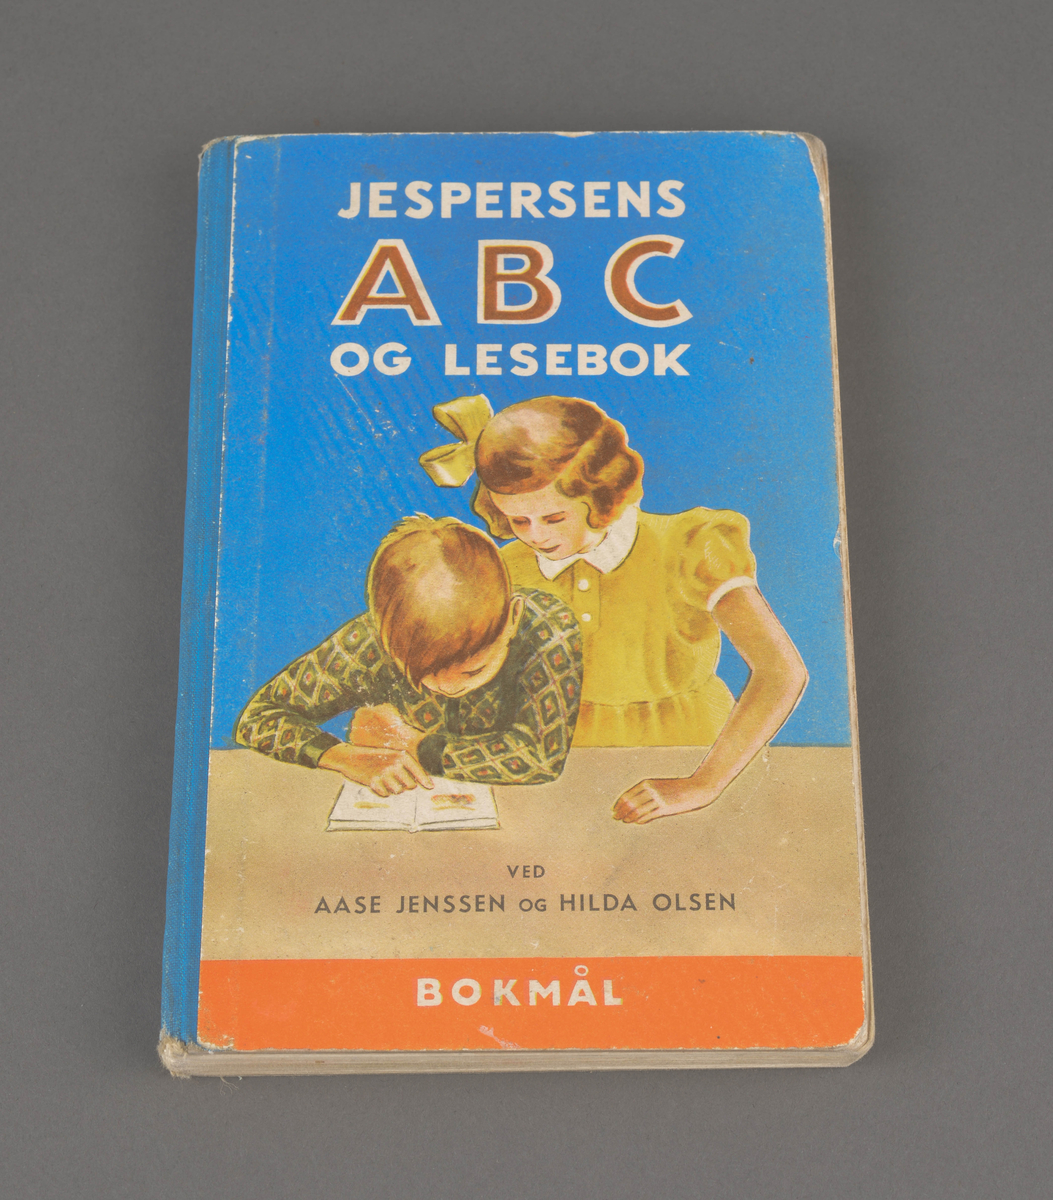 Jespersens ABC og lesebok

Utgitt på Aschehoug & Co (W. Nygaard) på bokmål.
Utgitt i 1951